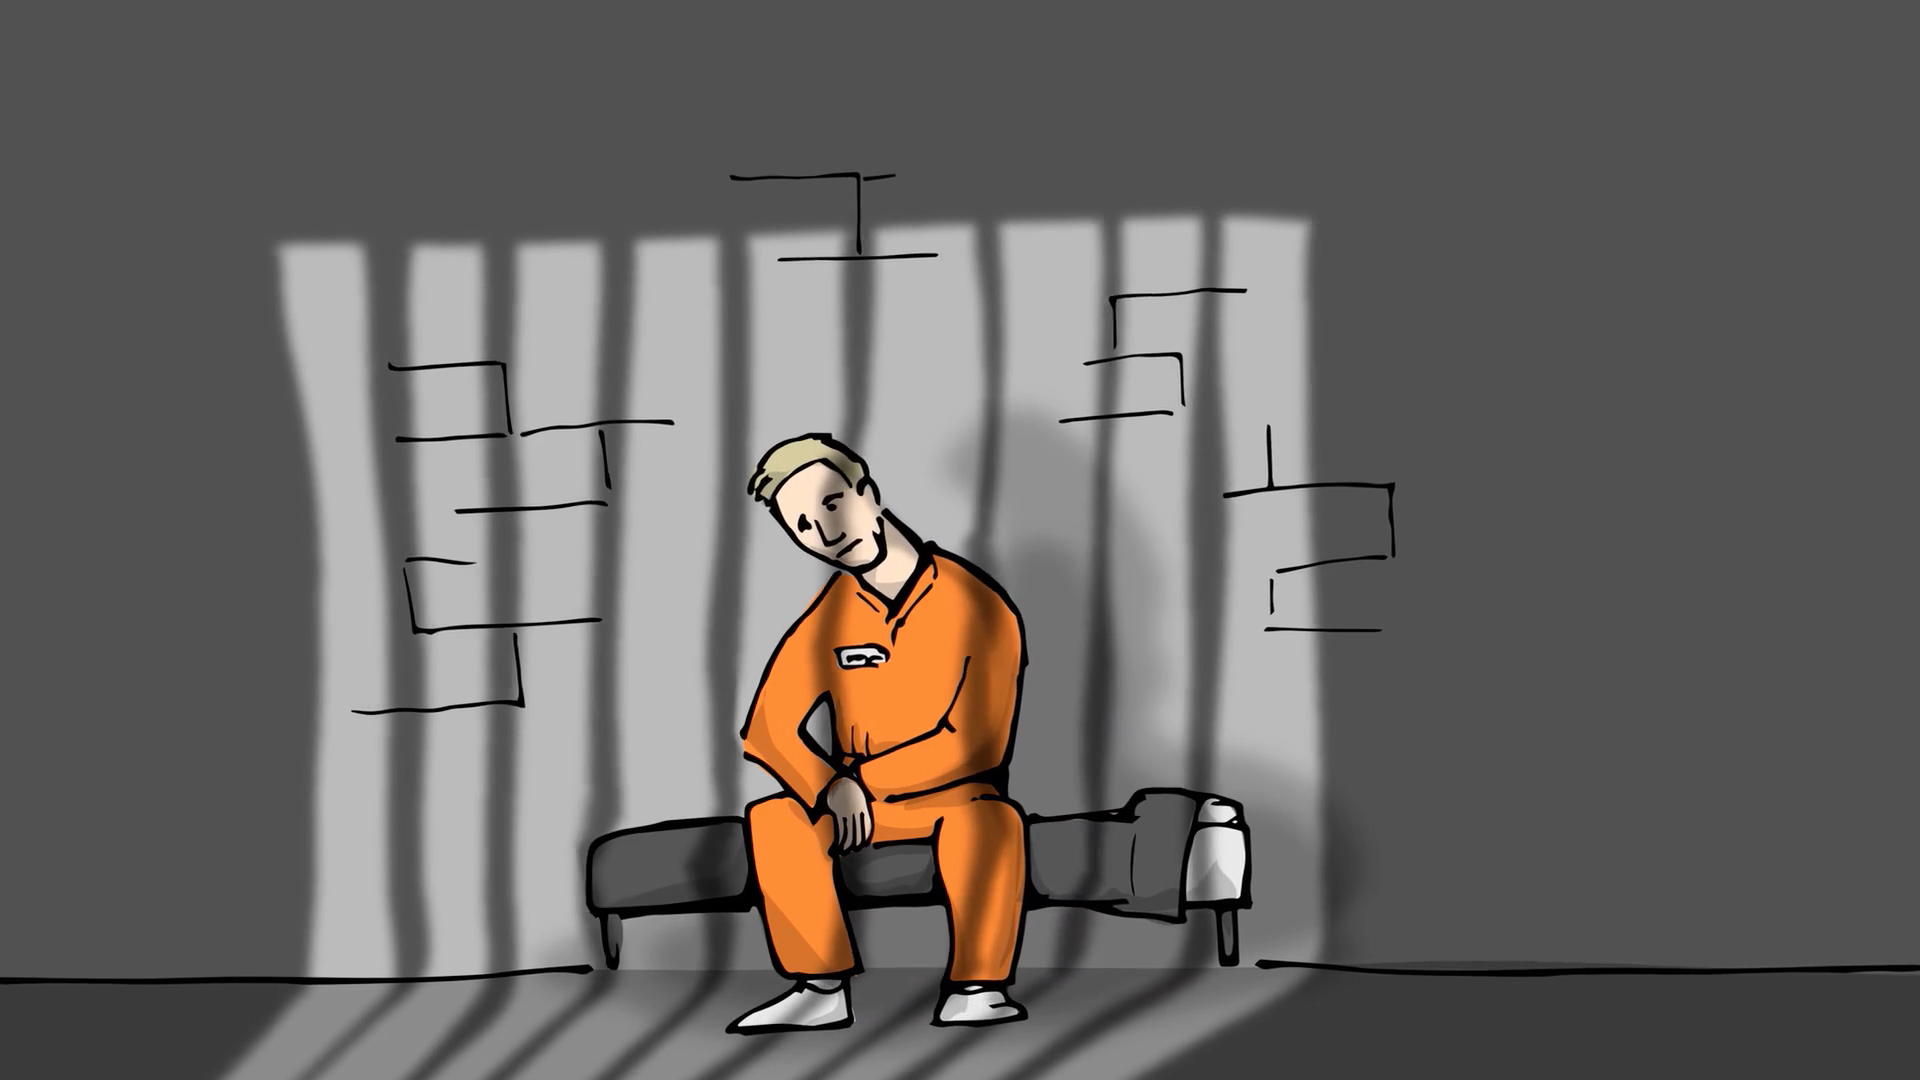 RTETV_Taj_Moose_Prison.jpg